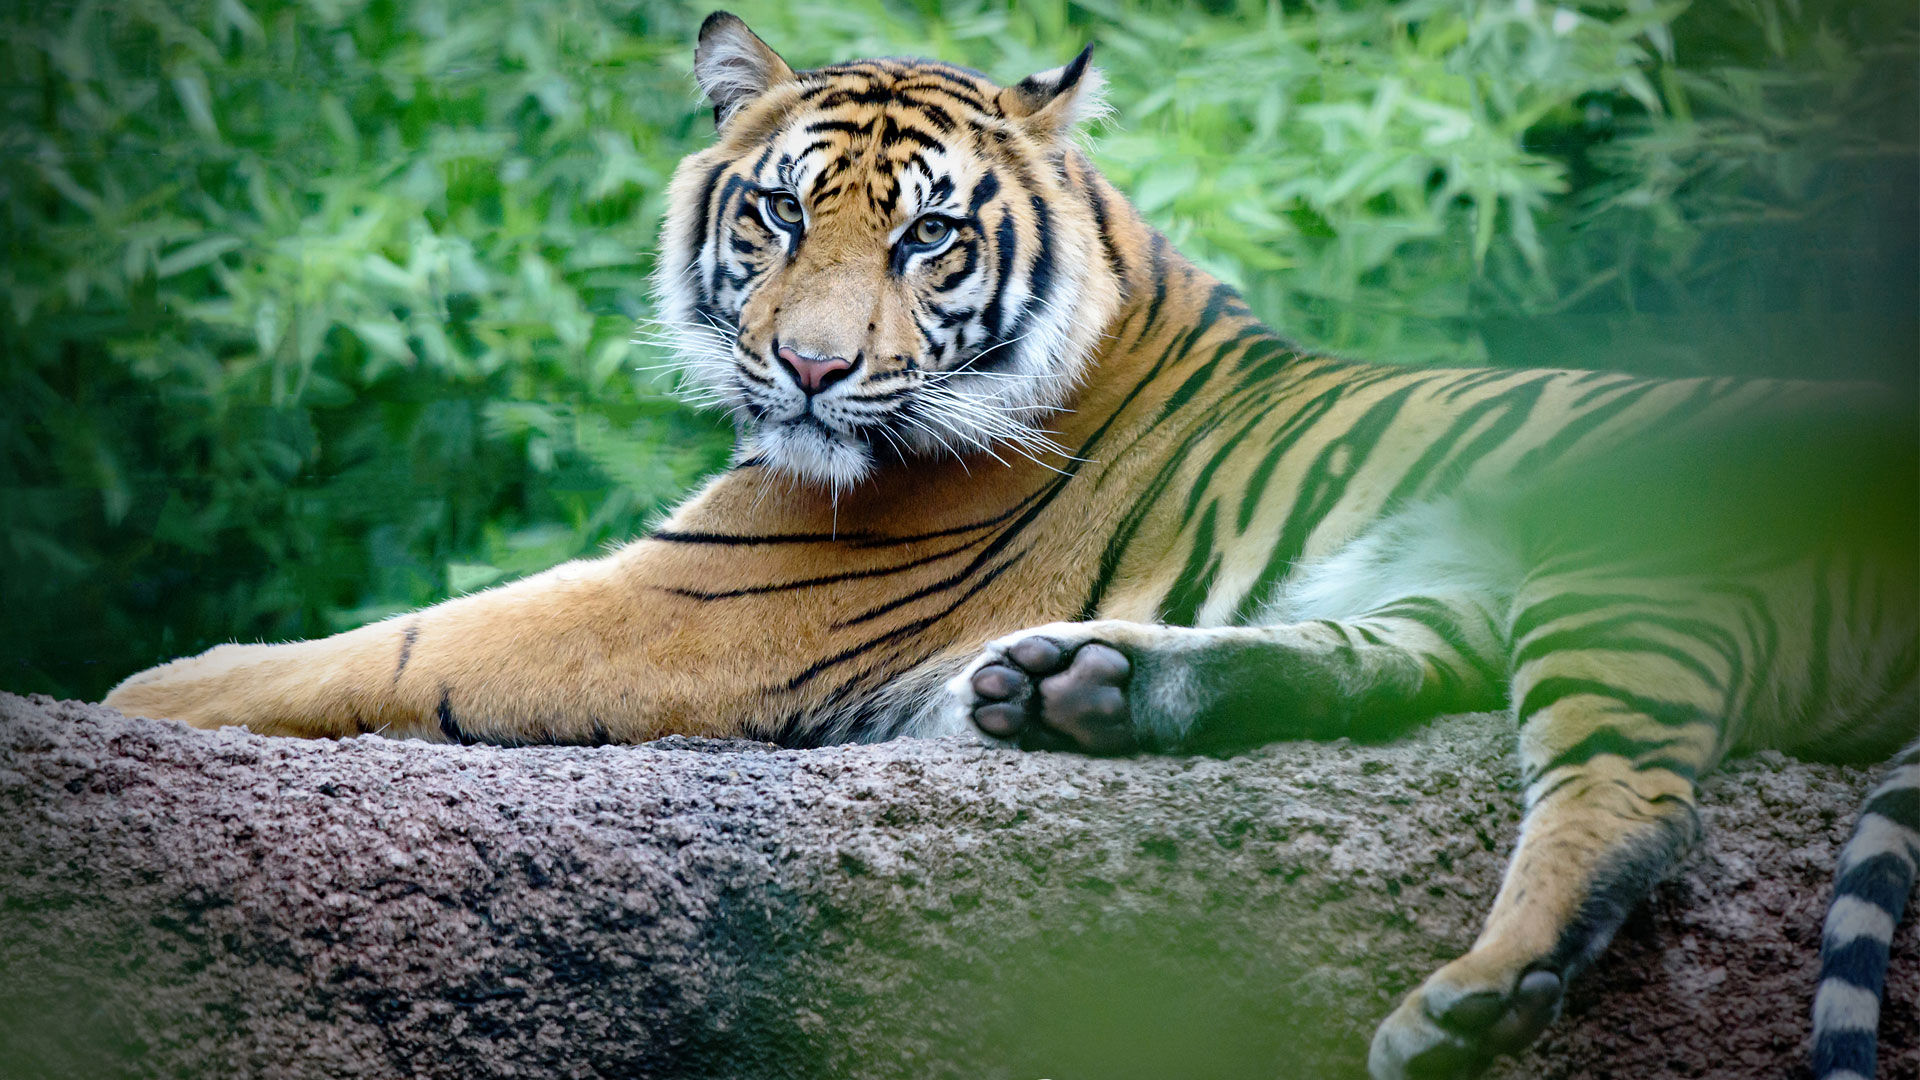 https://cdn.aucklandunlimited.com/zoo/assets/media/sumatran-tiger-zayana-gallery-1.jpg